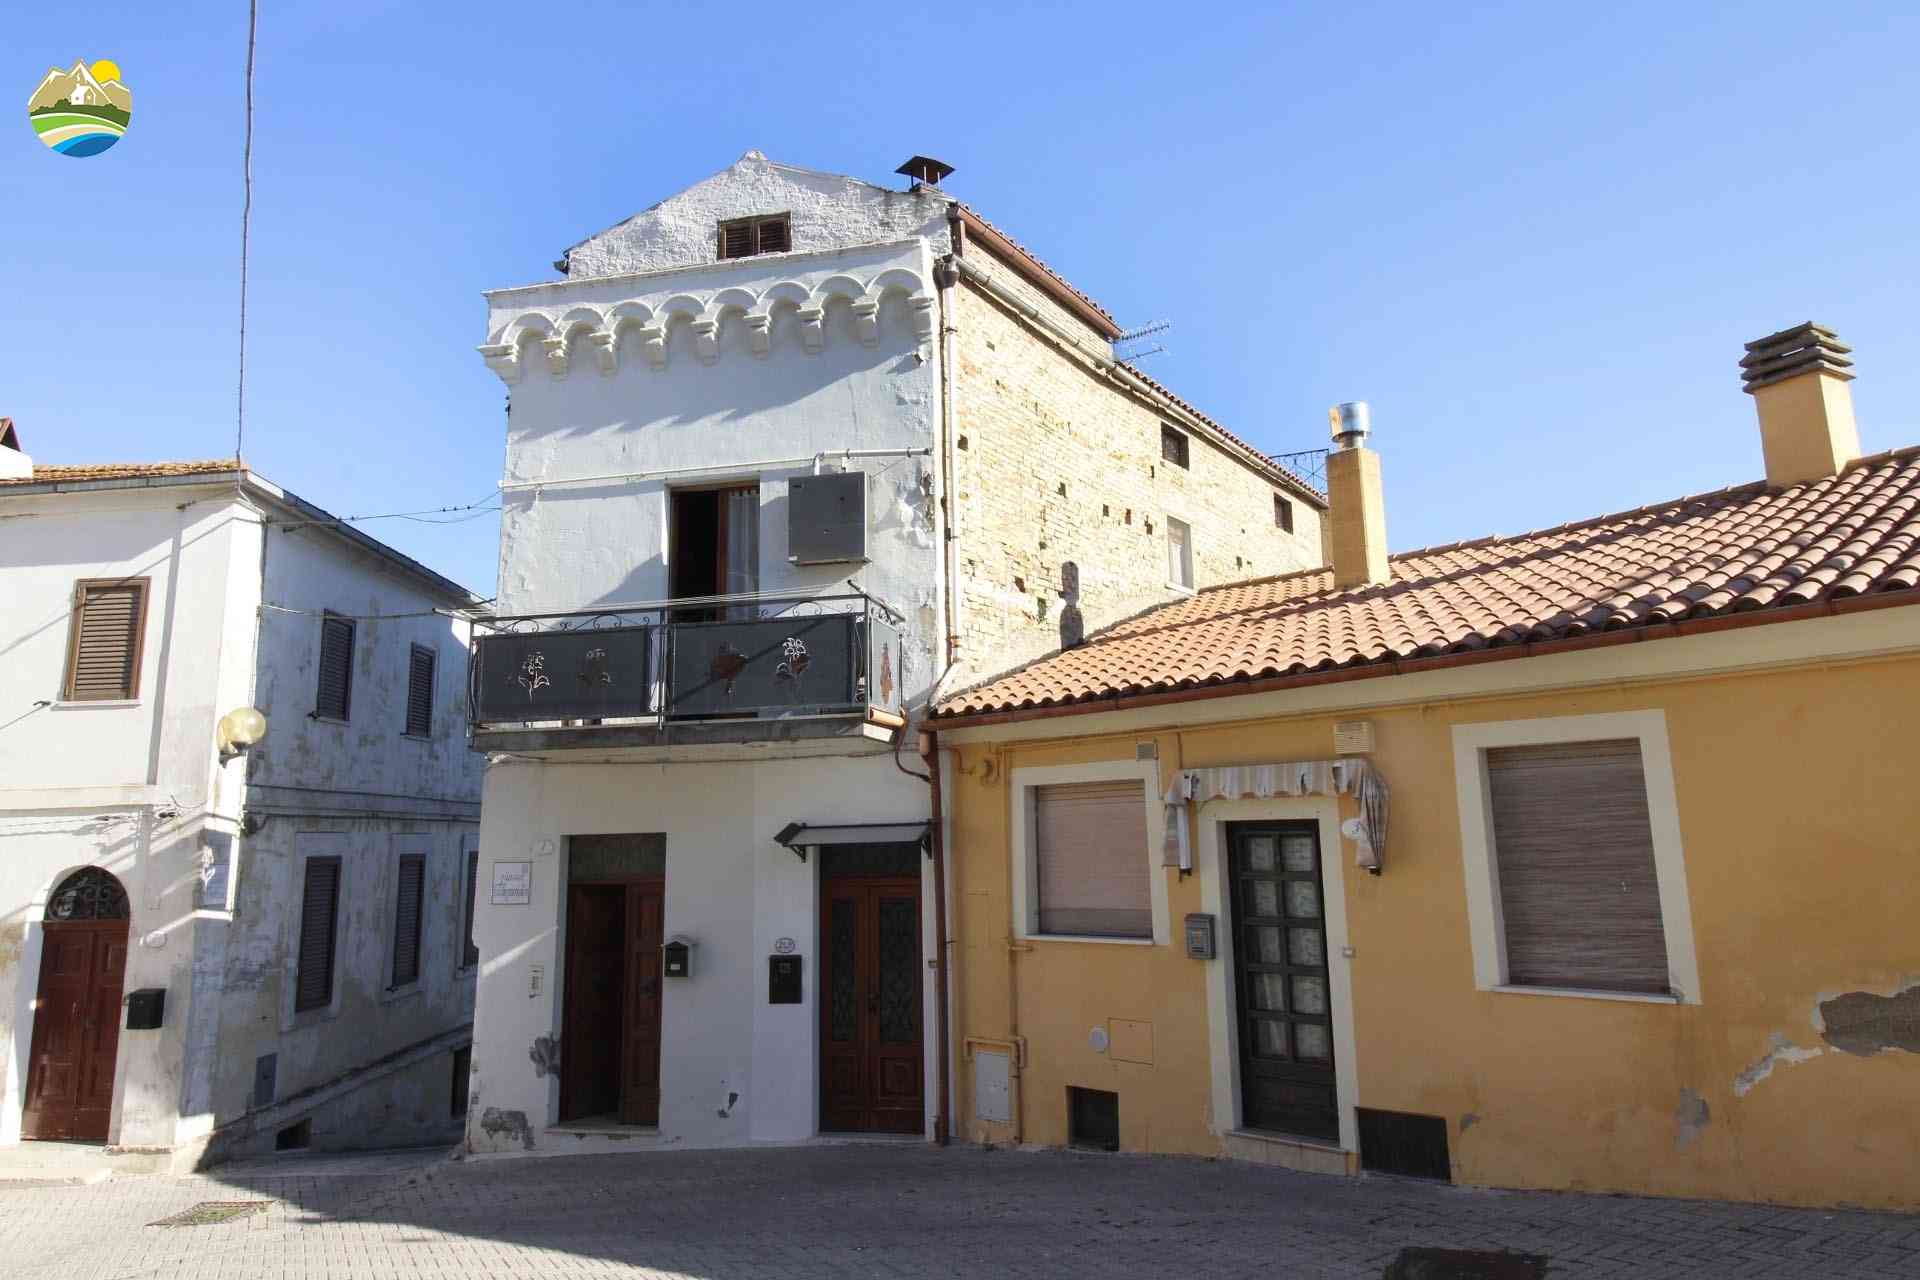 Casa in paese Casa in paese in vendita Elice (PE), Casa Antonella - Elice - EUR 90.531 800